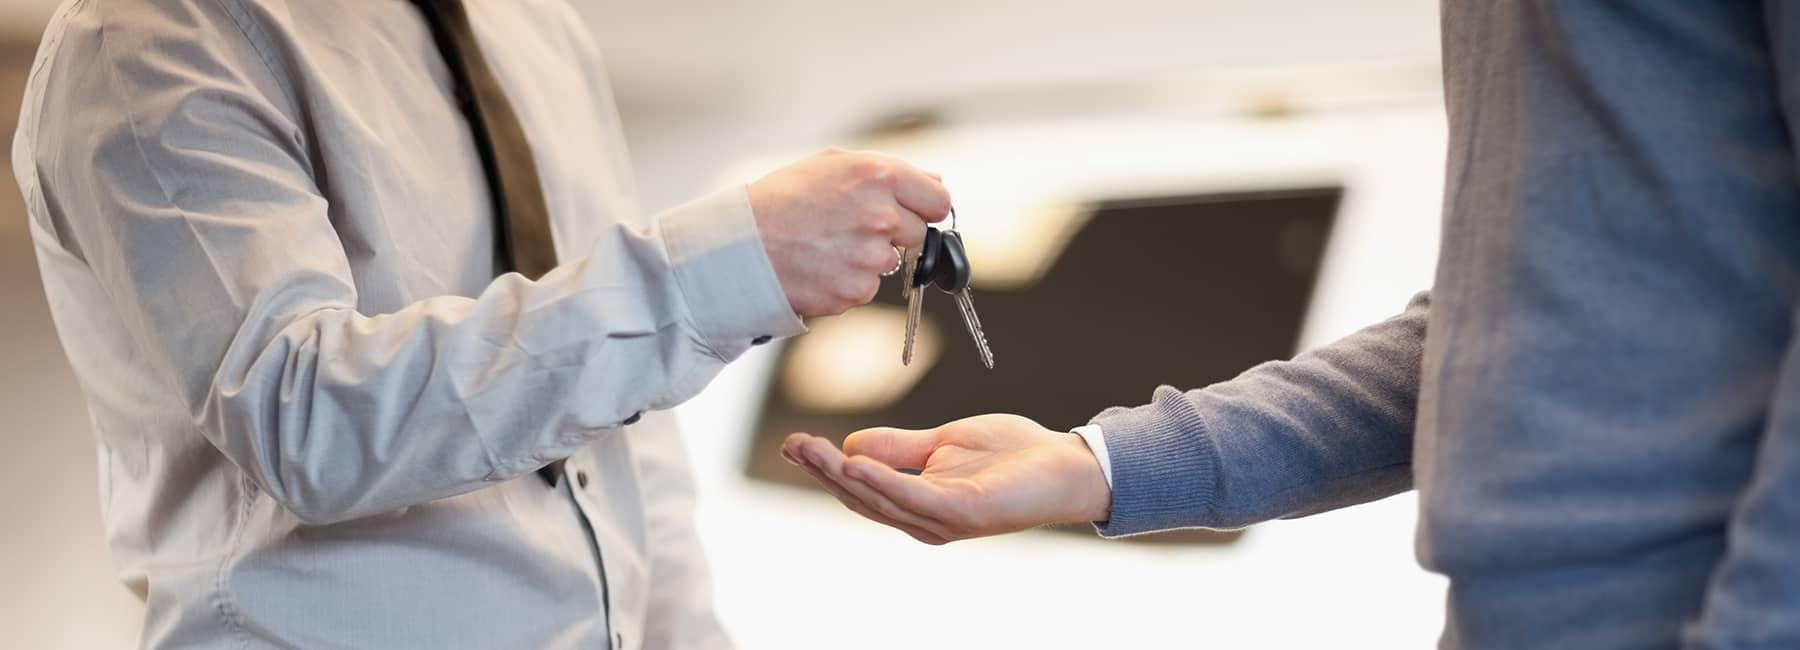 men exchanging car keys